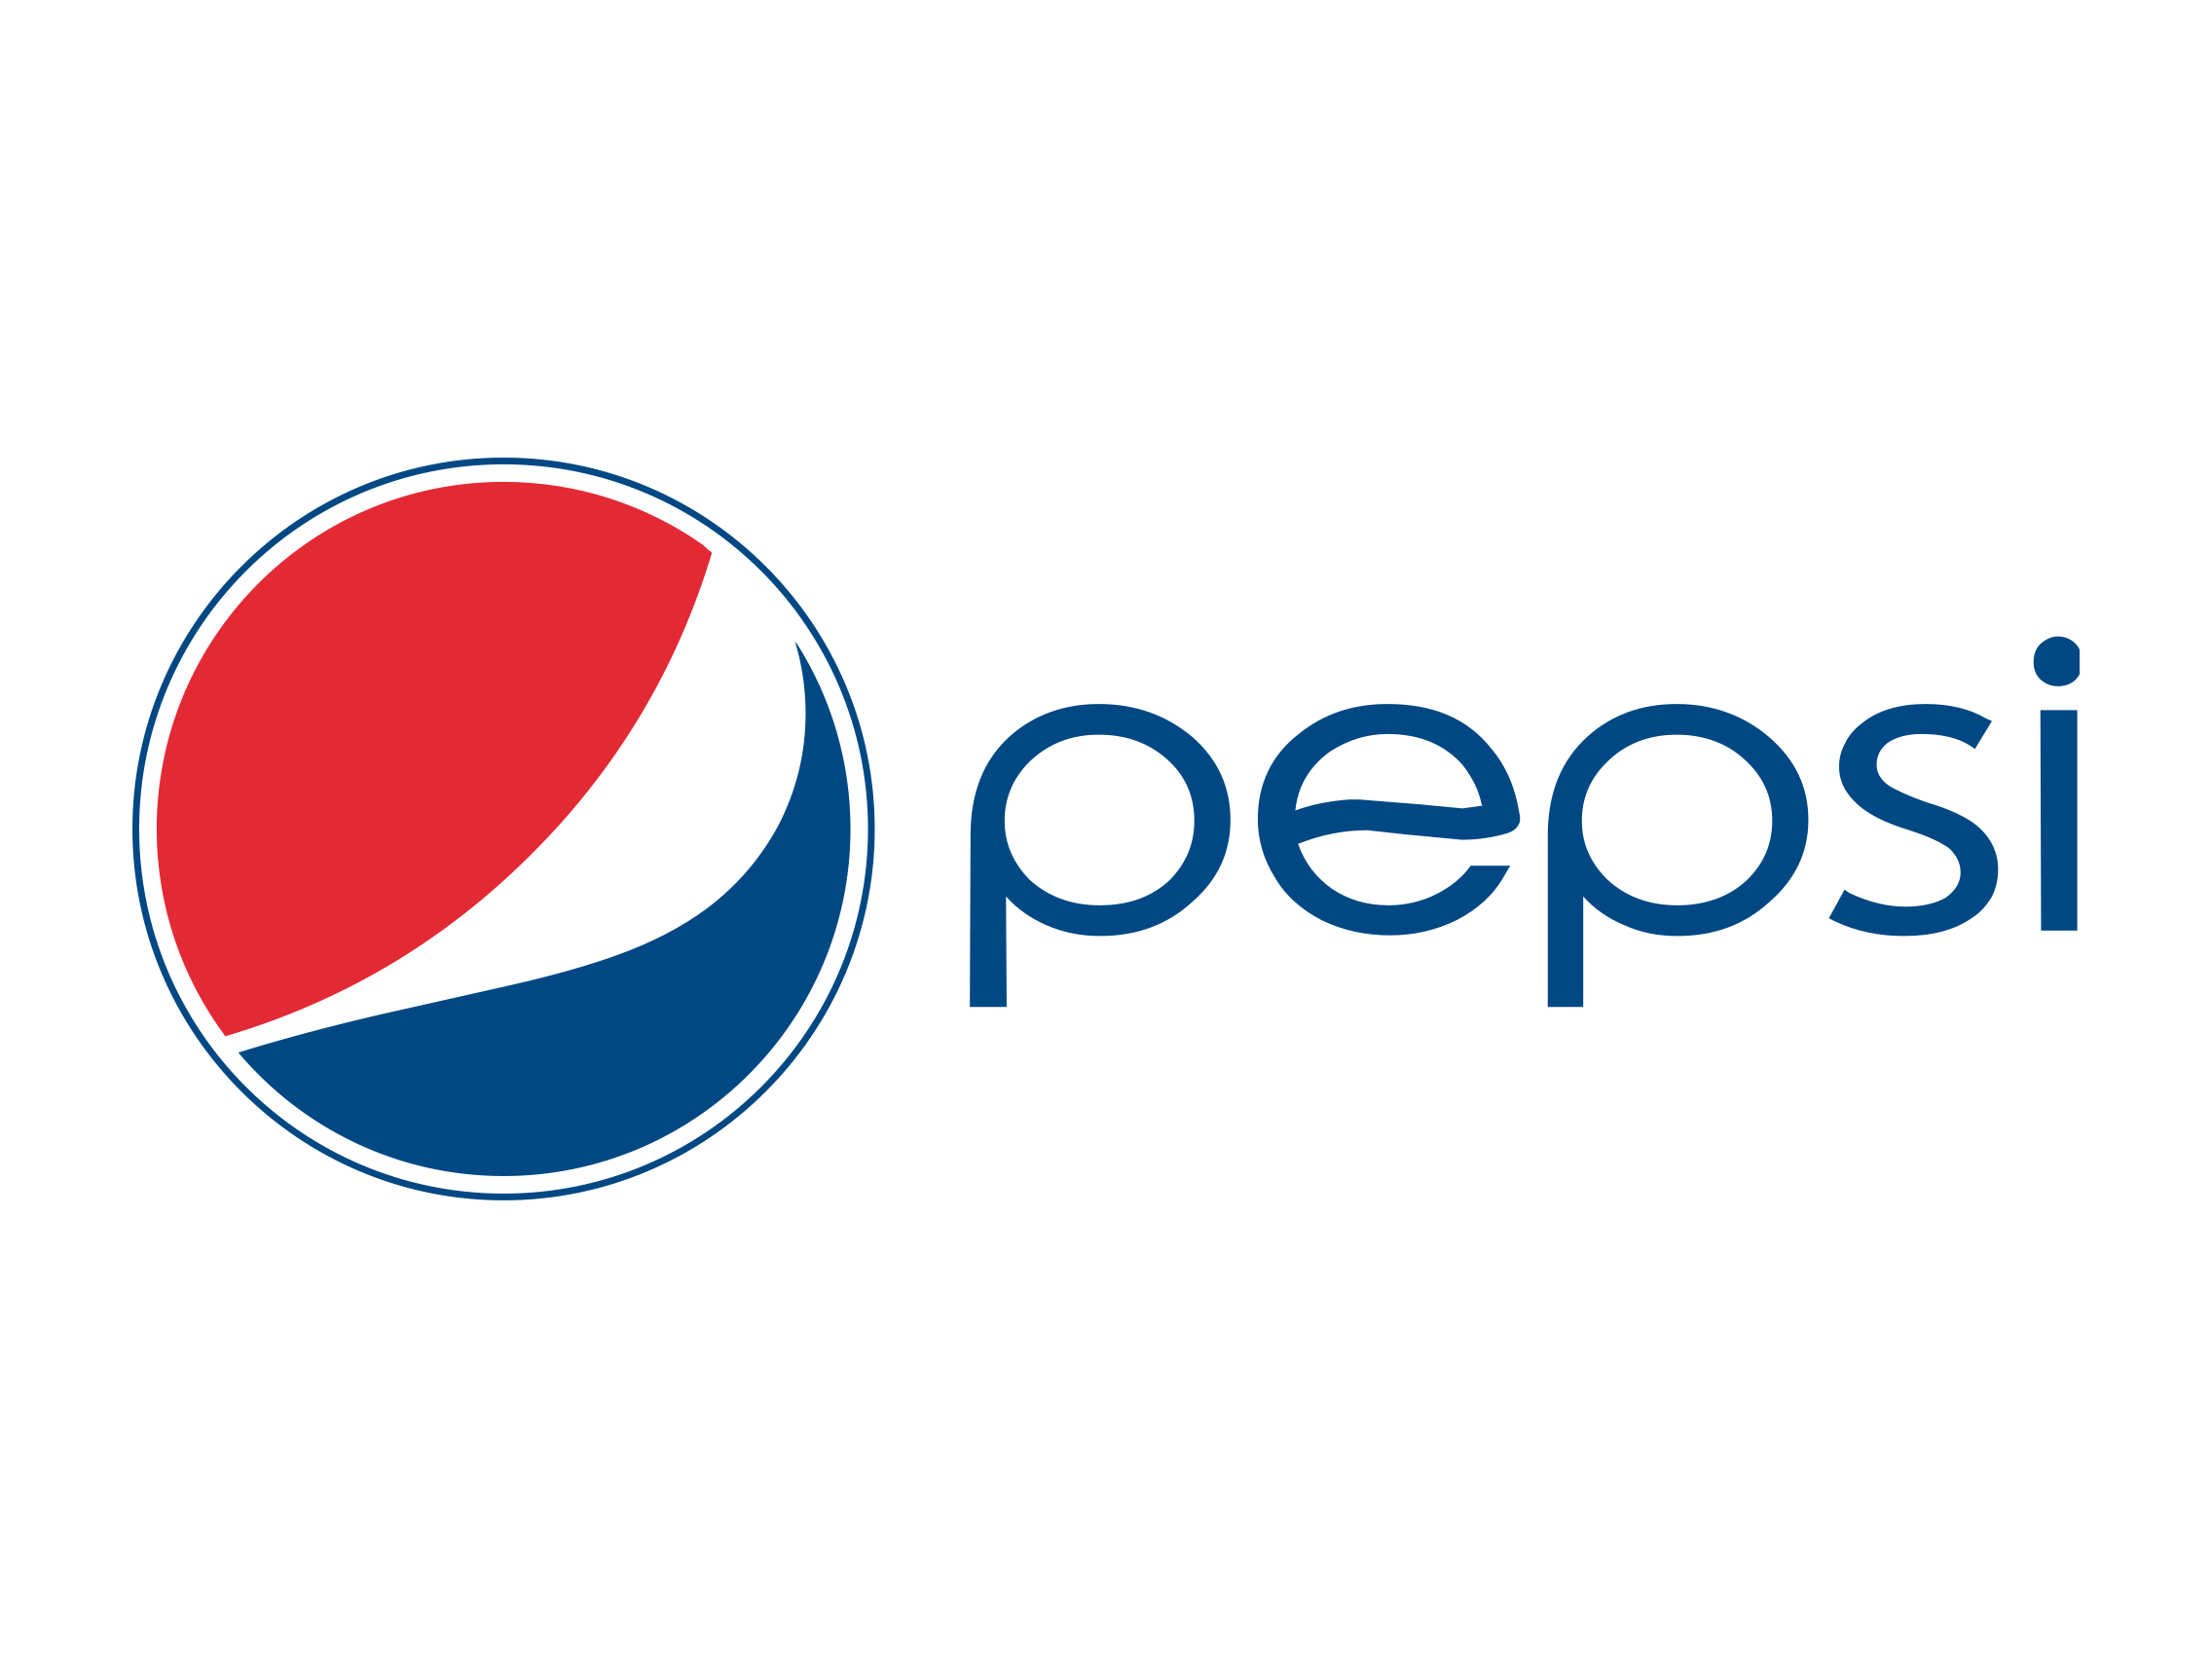 Pepsi-logo-2008 horizontal.png